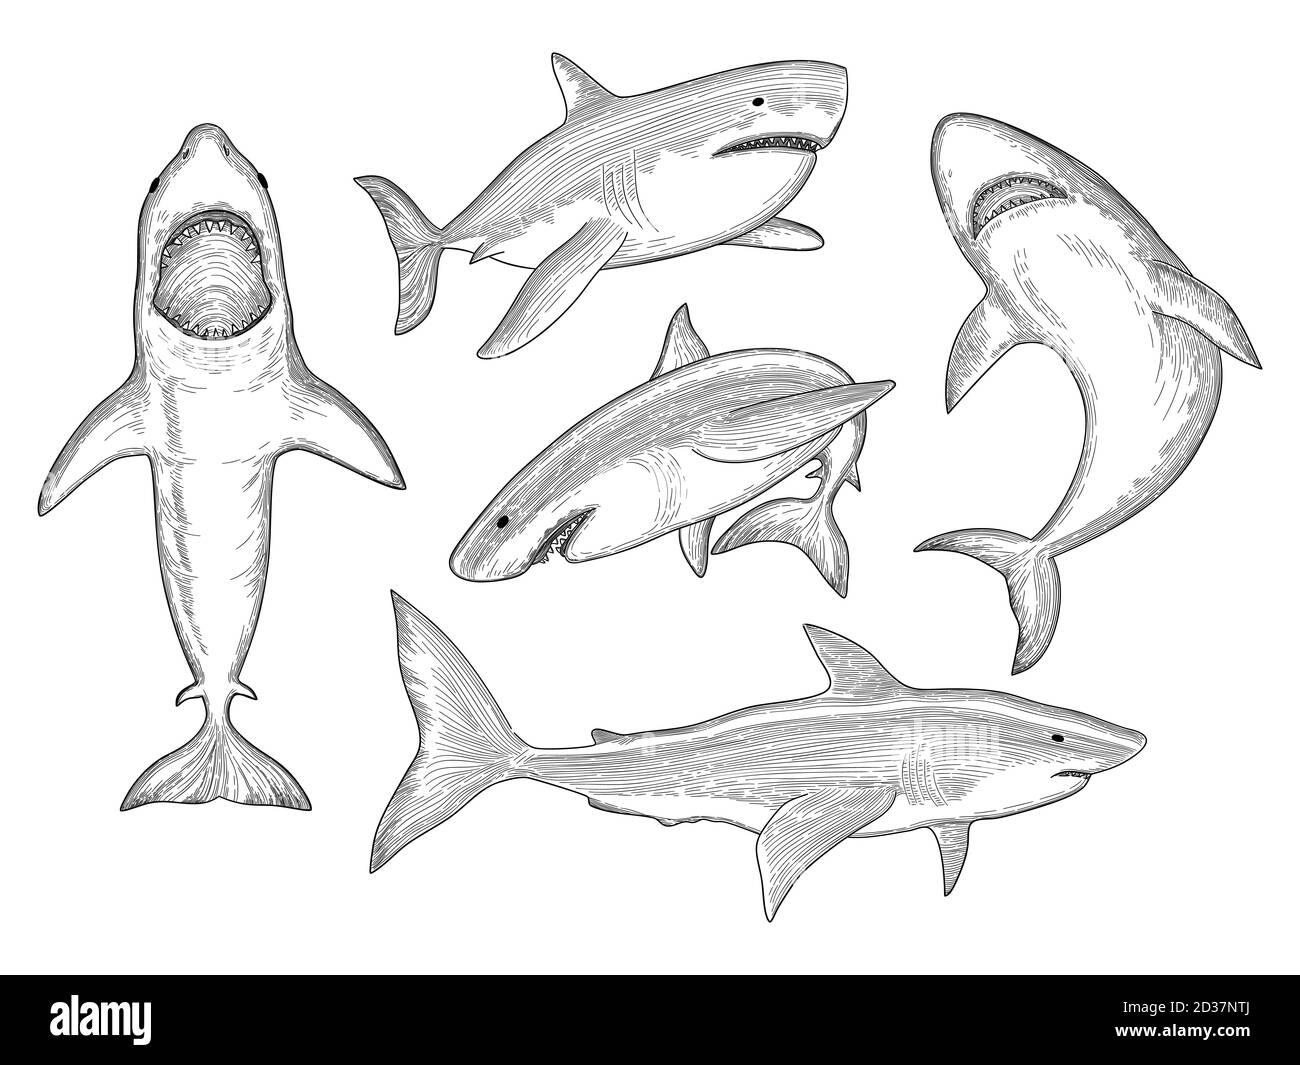 Hai von Hand gezeichnet. Wasser Kreatur fließenden großen Monster Fisch mit Mund Vektor Skizze Sammlung Stock Vektor